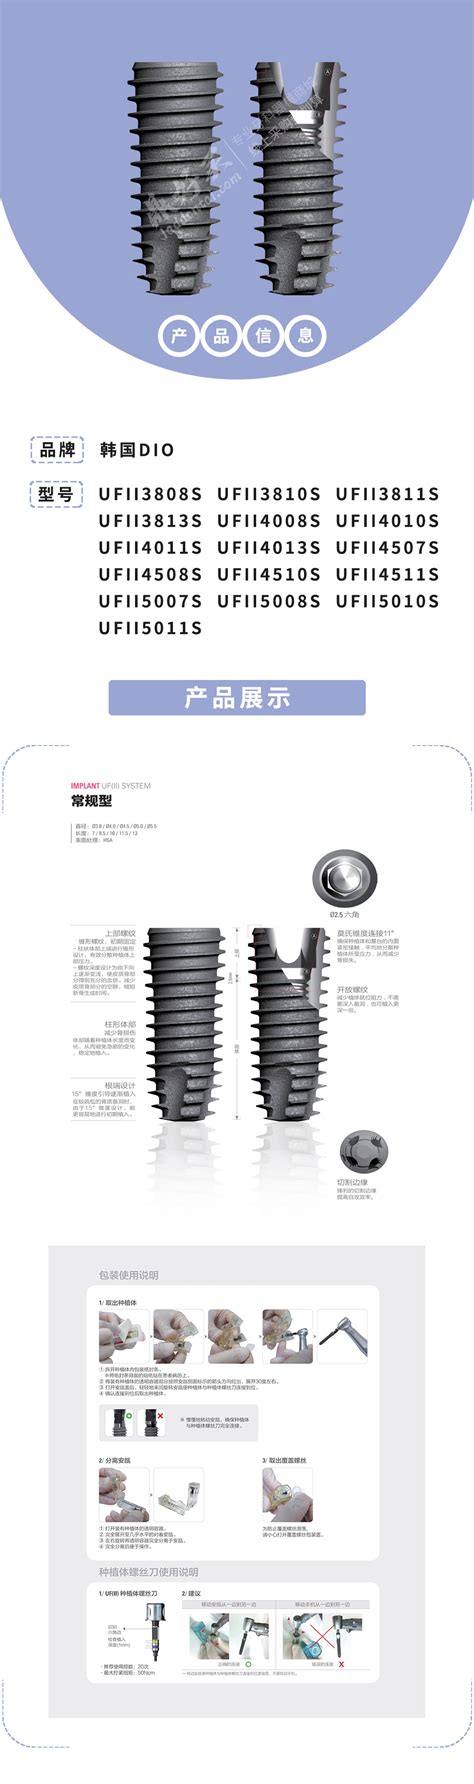 韩国DIO UFII种植体/常规型种植 - 鼎好买|专业牙医器械商城 - 健安达医疗